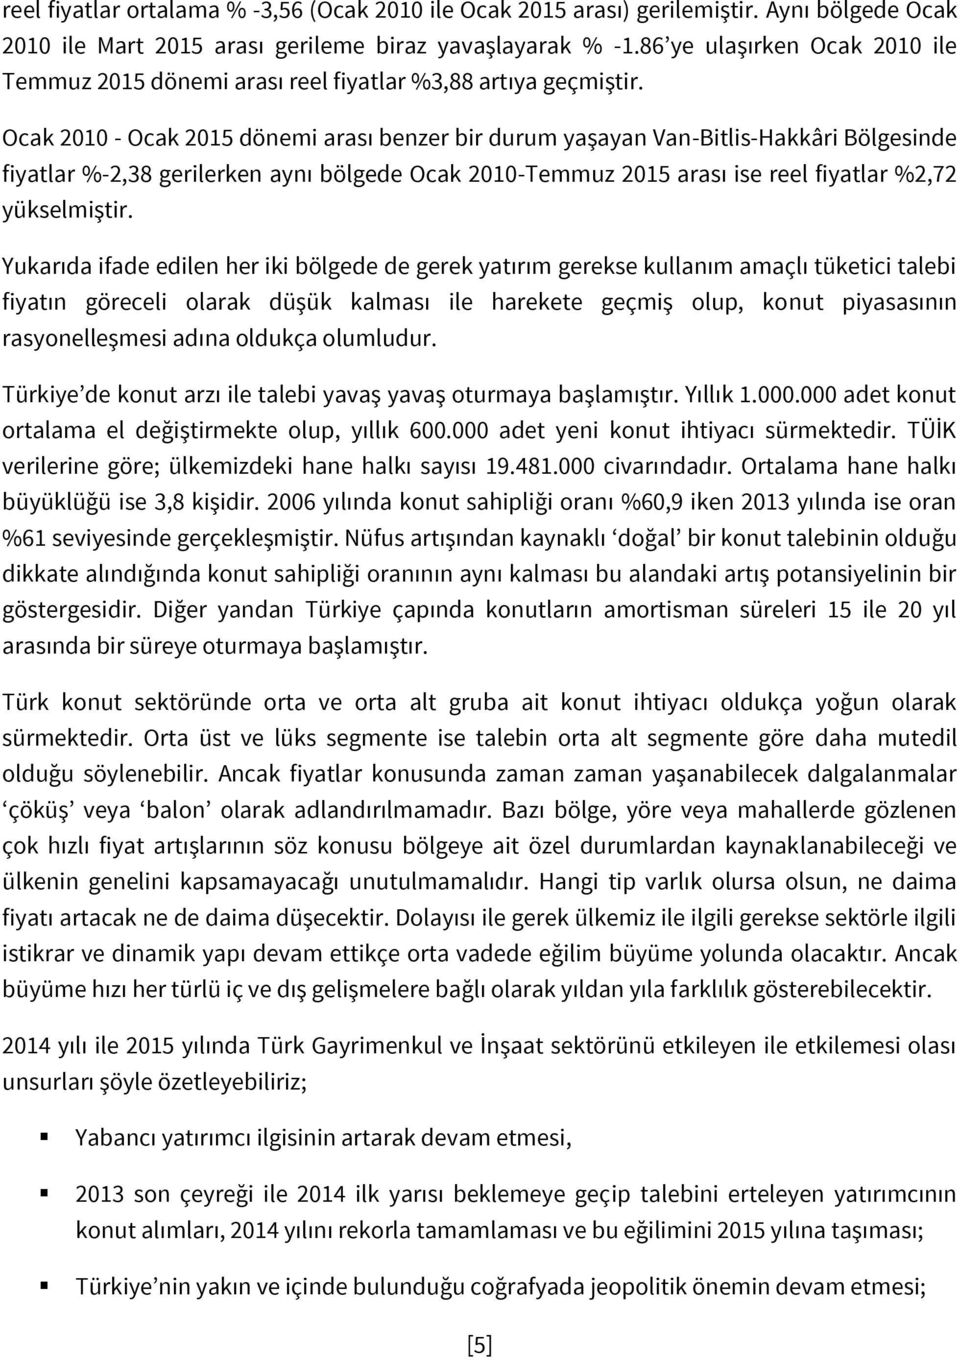 Ocak 2010 - Ocak 2015 dönemi arası benzer bir durum yaşayan Van-Bitlis-Hakkâri Bölgesinde fiyatlar %-2,38 gerilerken aynı bölgede Ocak 2010-Temmuz 2015 arası ise reel fiyatlar %2,72 yükselmiştir.